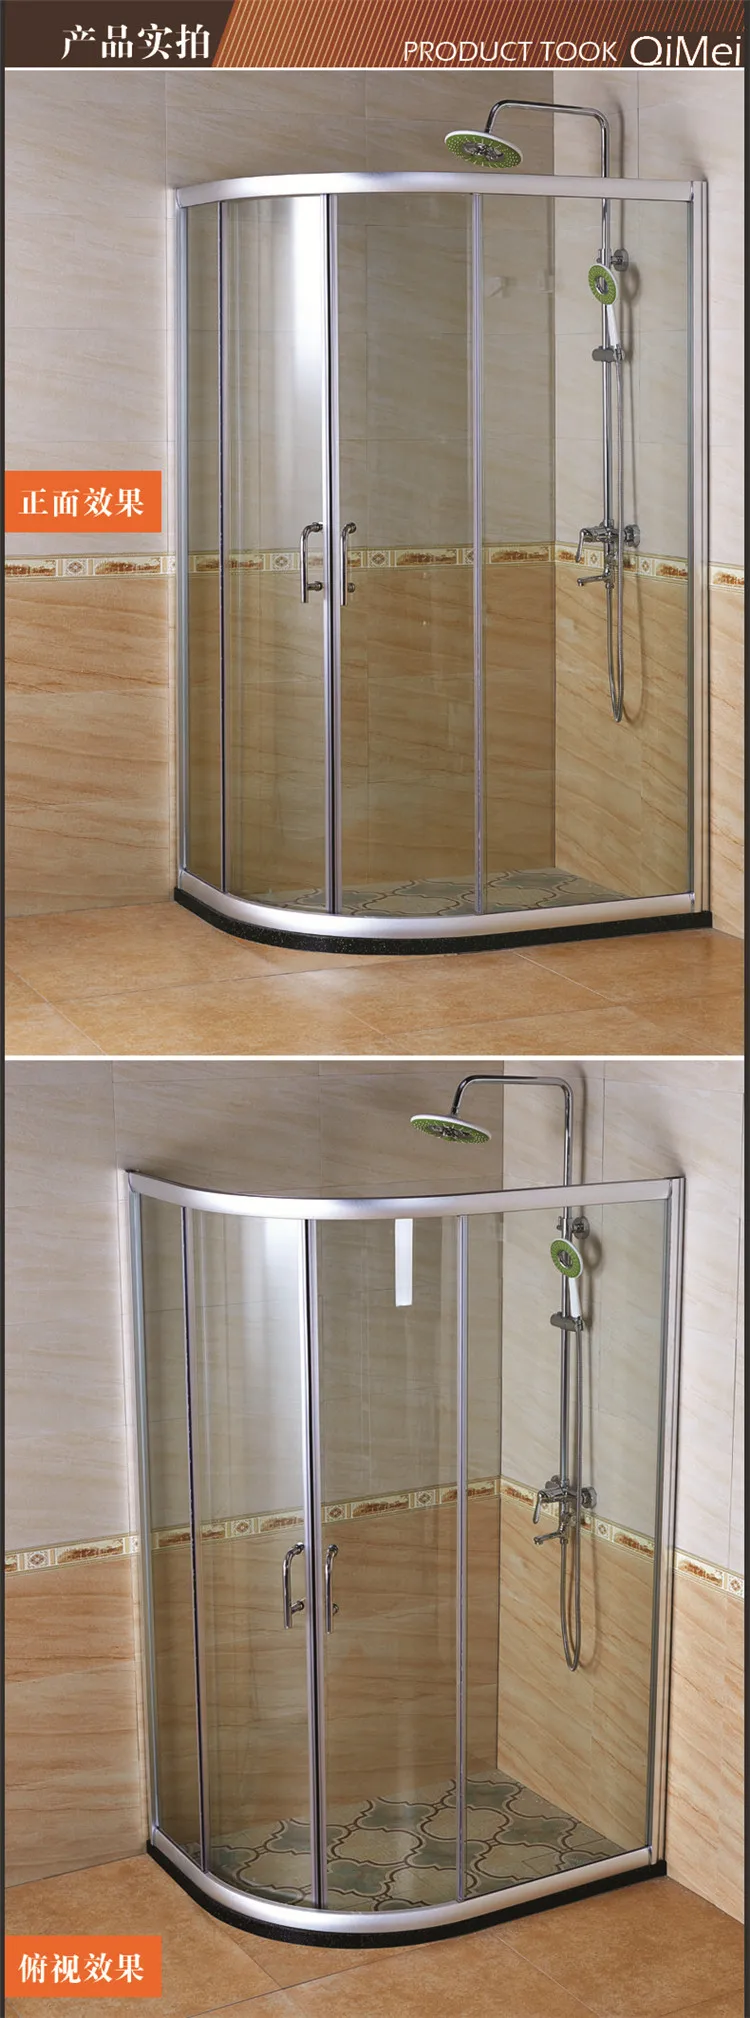 Cheap Aluminum Framed Sliding Shower enclosure  corner shower room